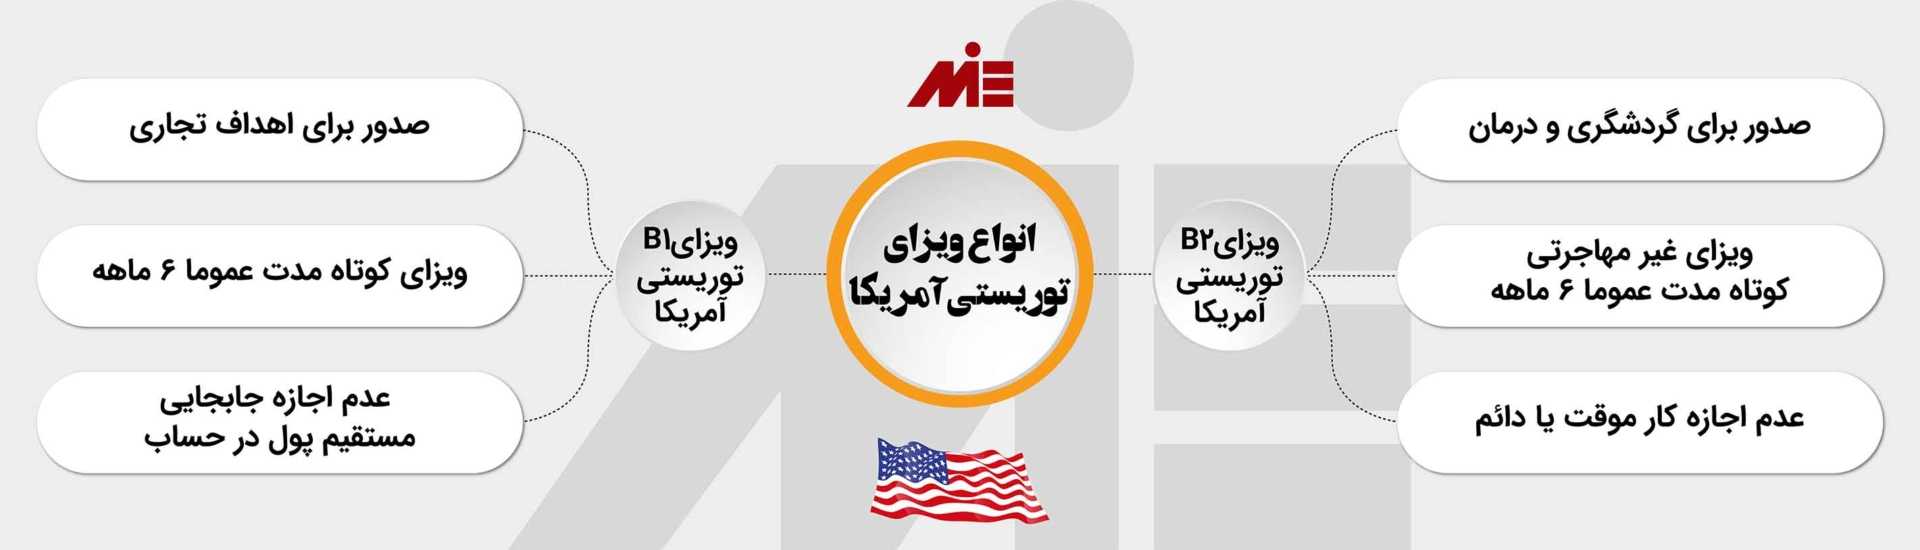 آشنایی با انواع ویزای توریستی آمریکا و نحوه دریافت آن برای ایرانیان با MIE